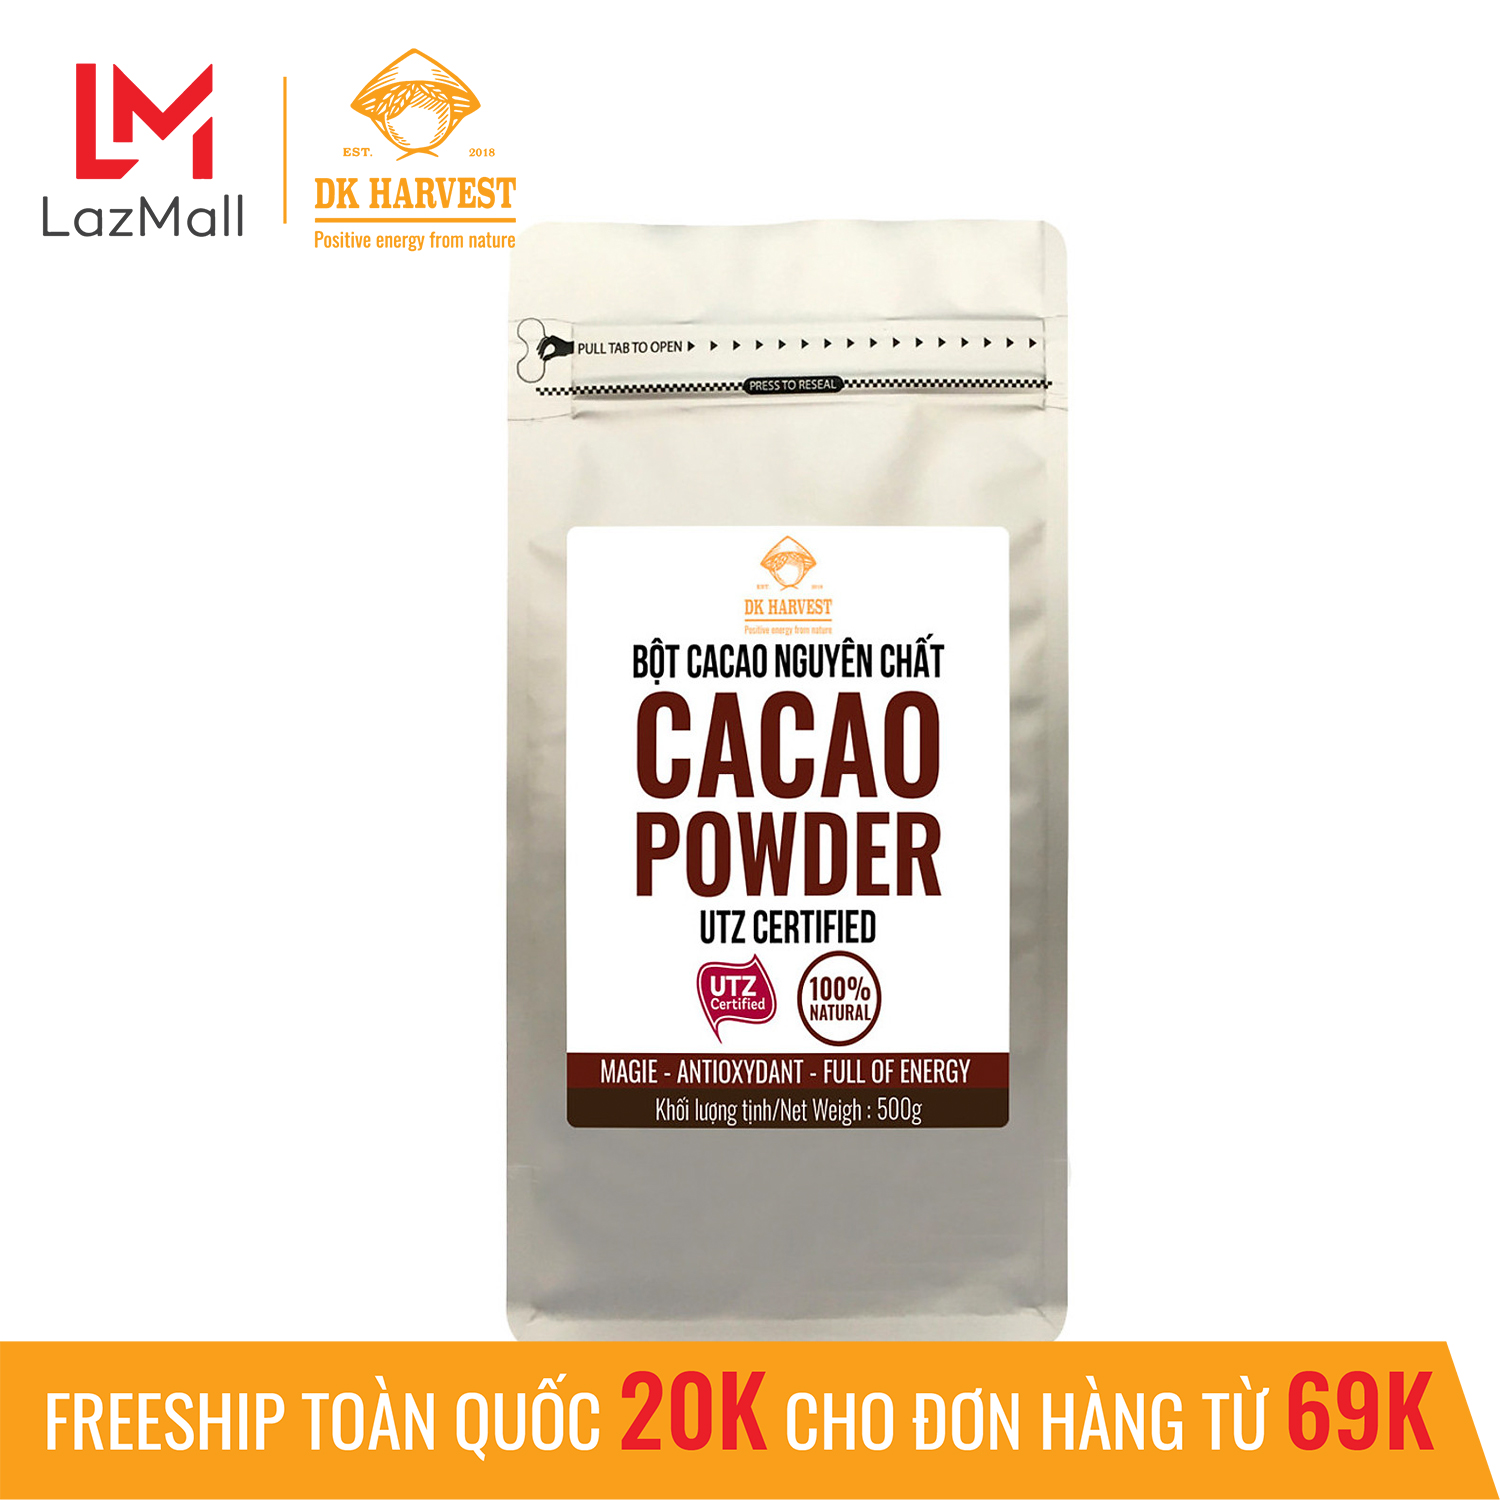 Bột cacao nguyên chất cao cấp DK Harvest - không pha trộn tạp chất , dễ tan